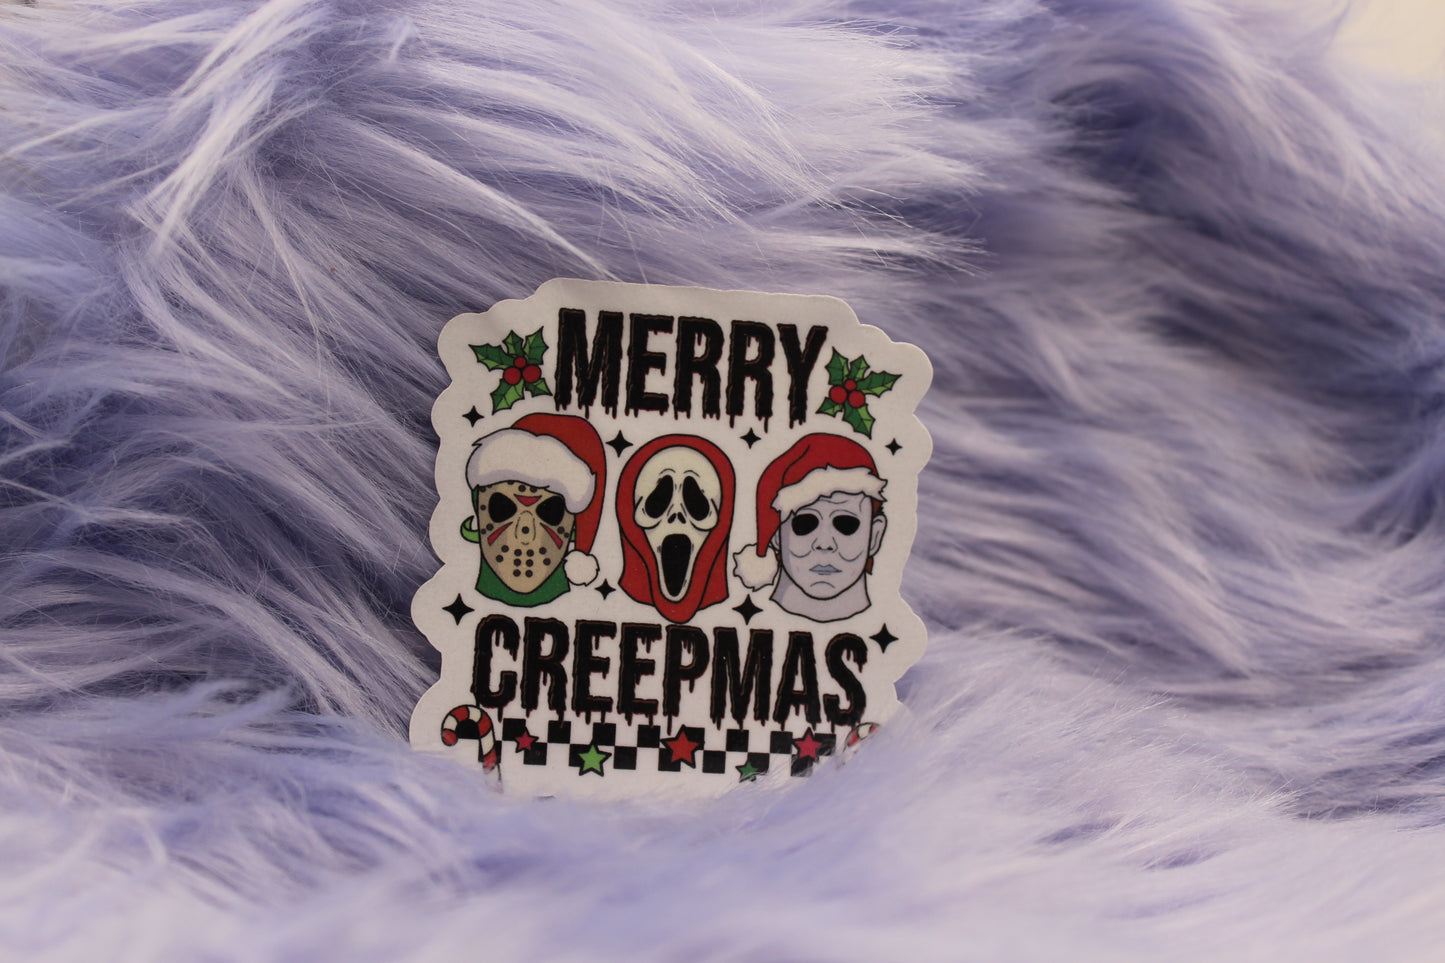 Merry Creepmas